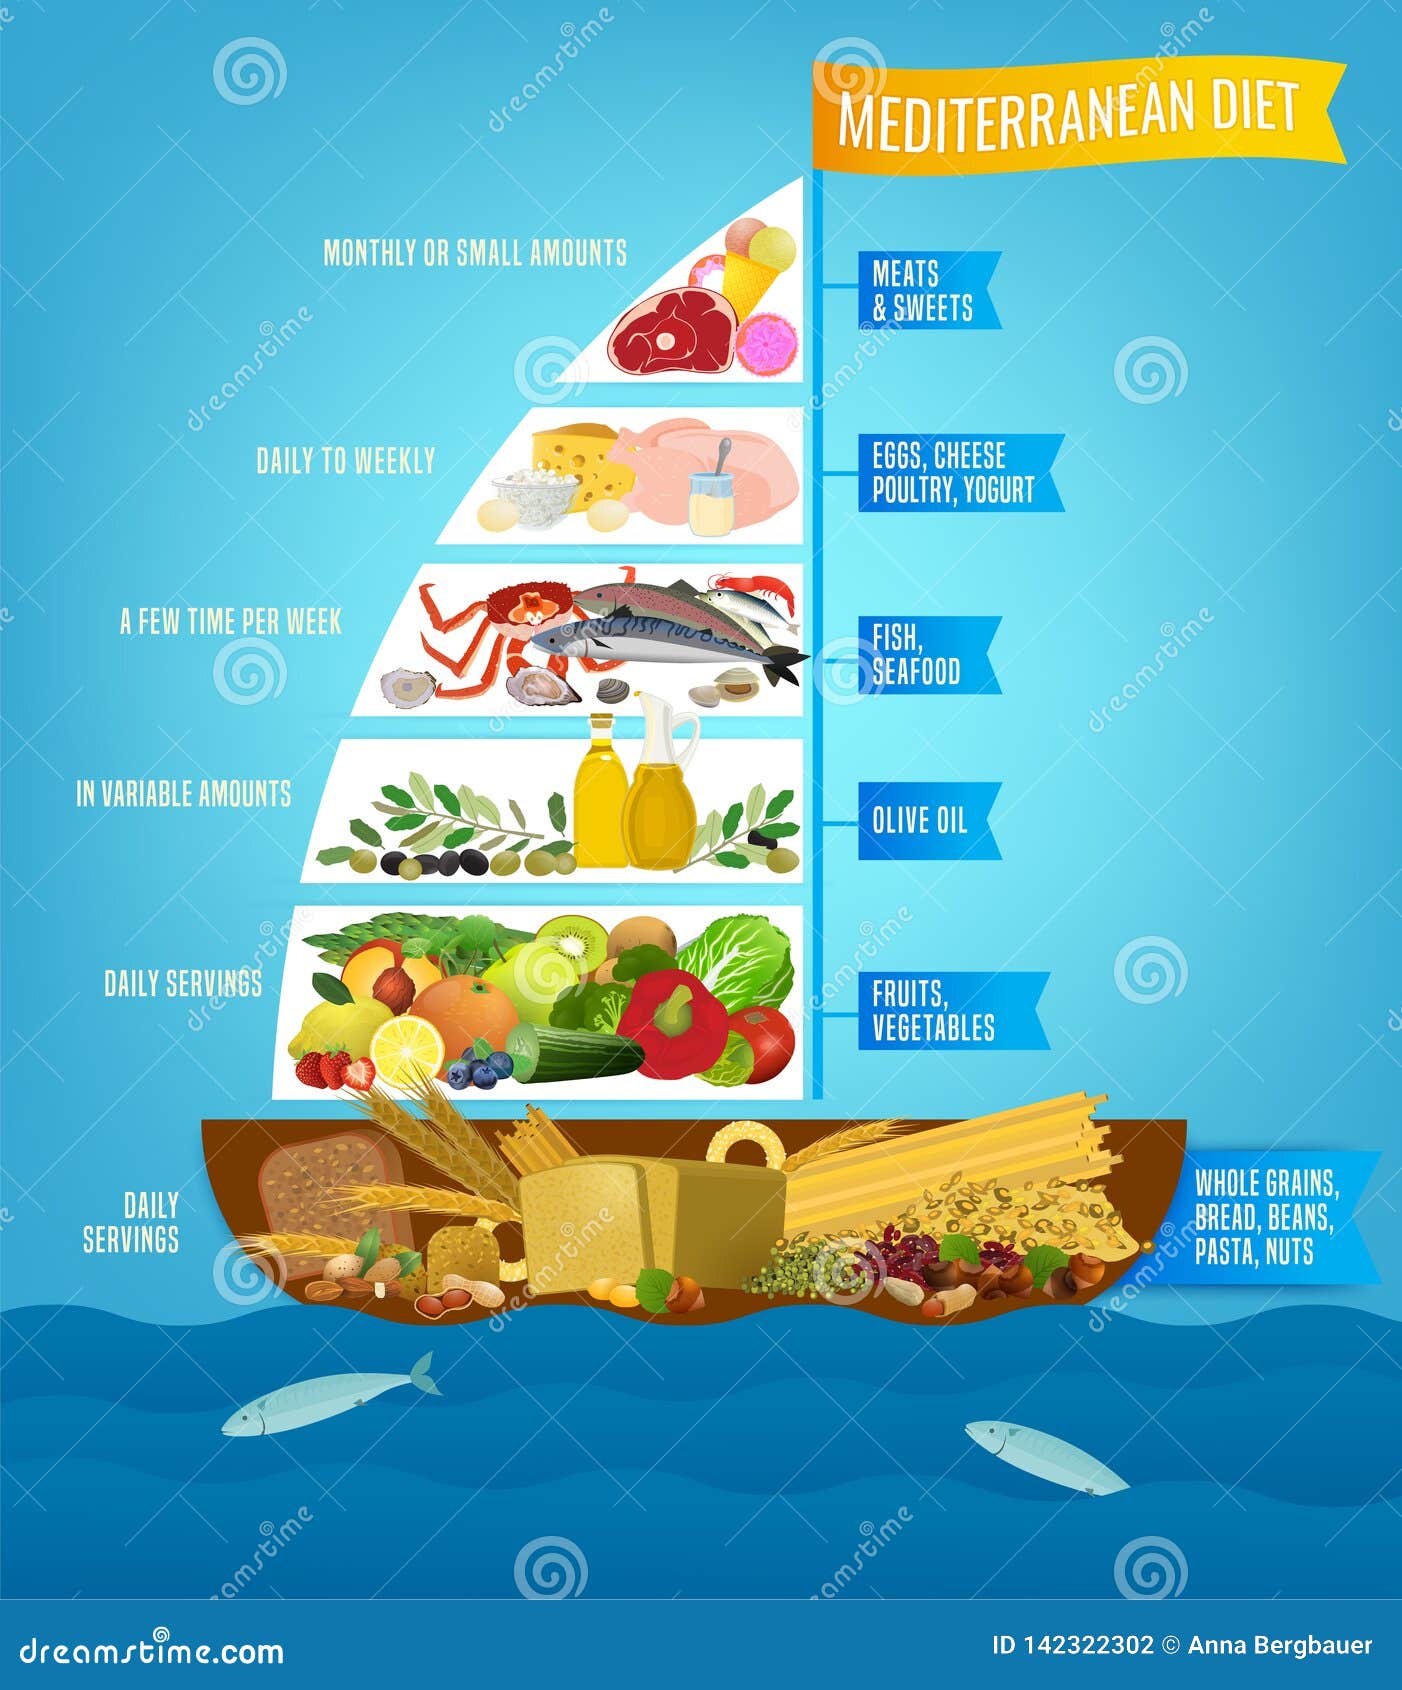 mediterranean diet poster